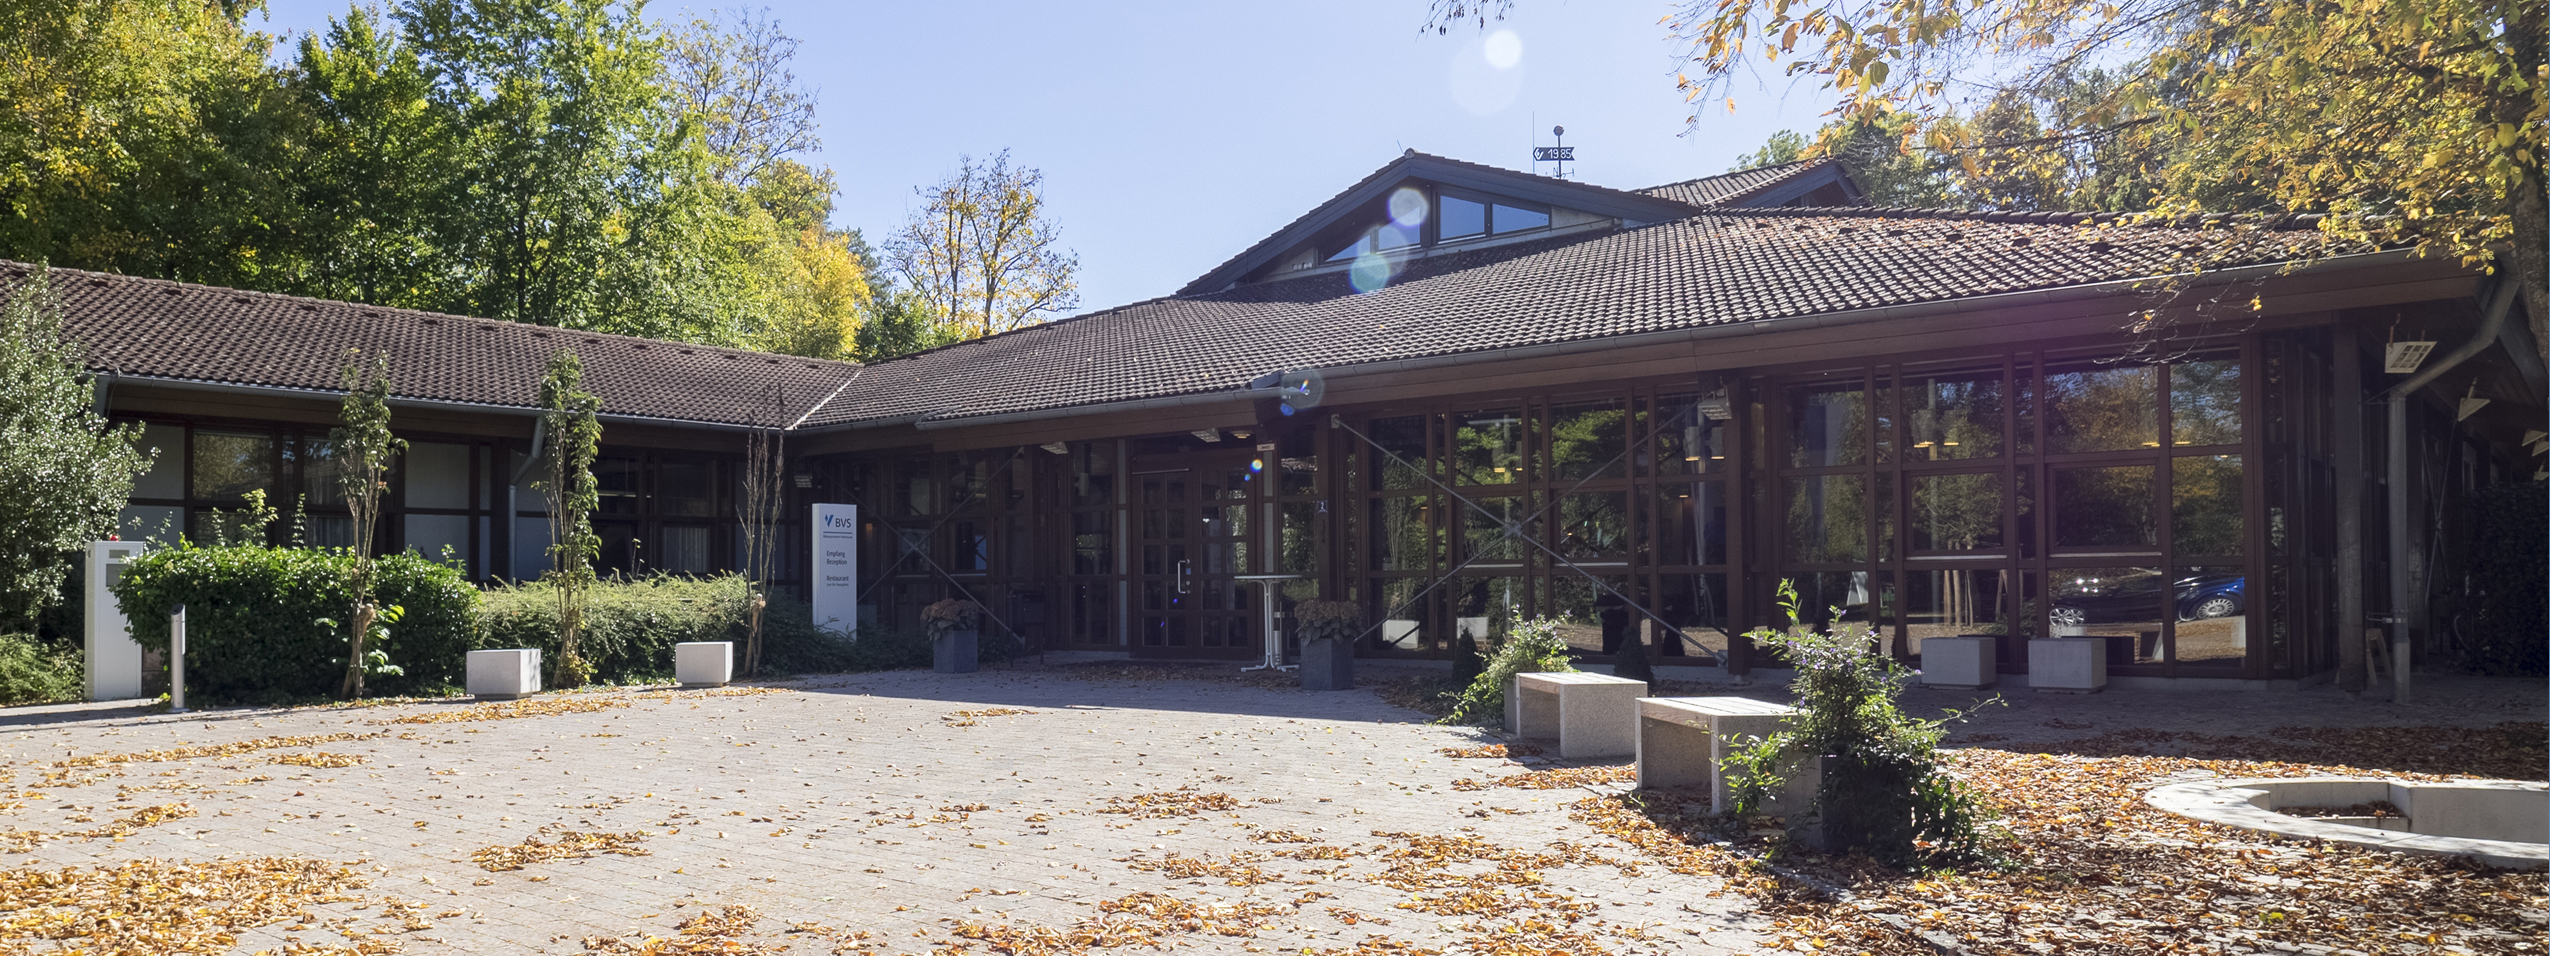 Das Bild zeigt den aus dunklem Holz bestehenden Eingangsbereich des Bildungszentrums Holzhausen im Herbst vor blauem Himmel